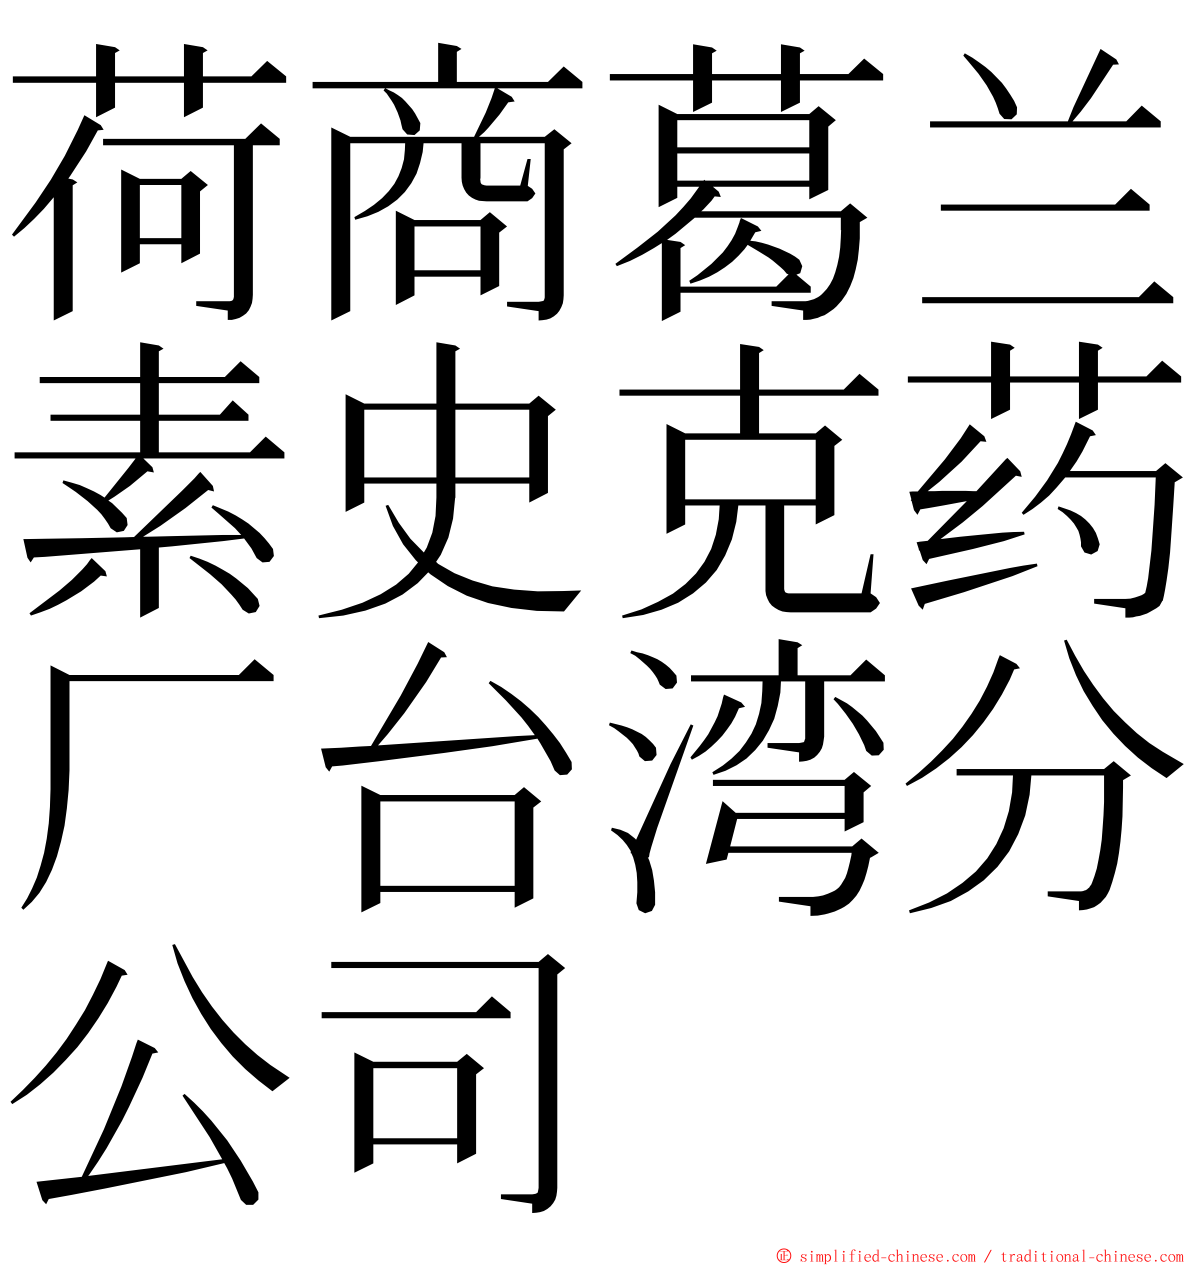 荷商葛兰素史克药厂台湾分公司 ming font